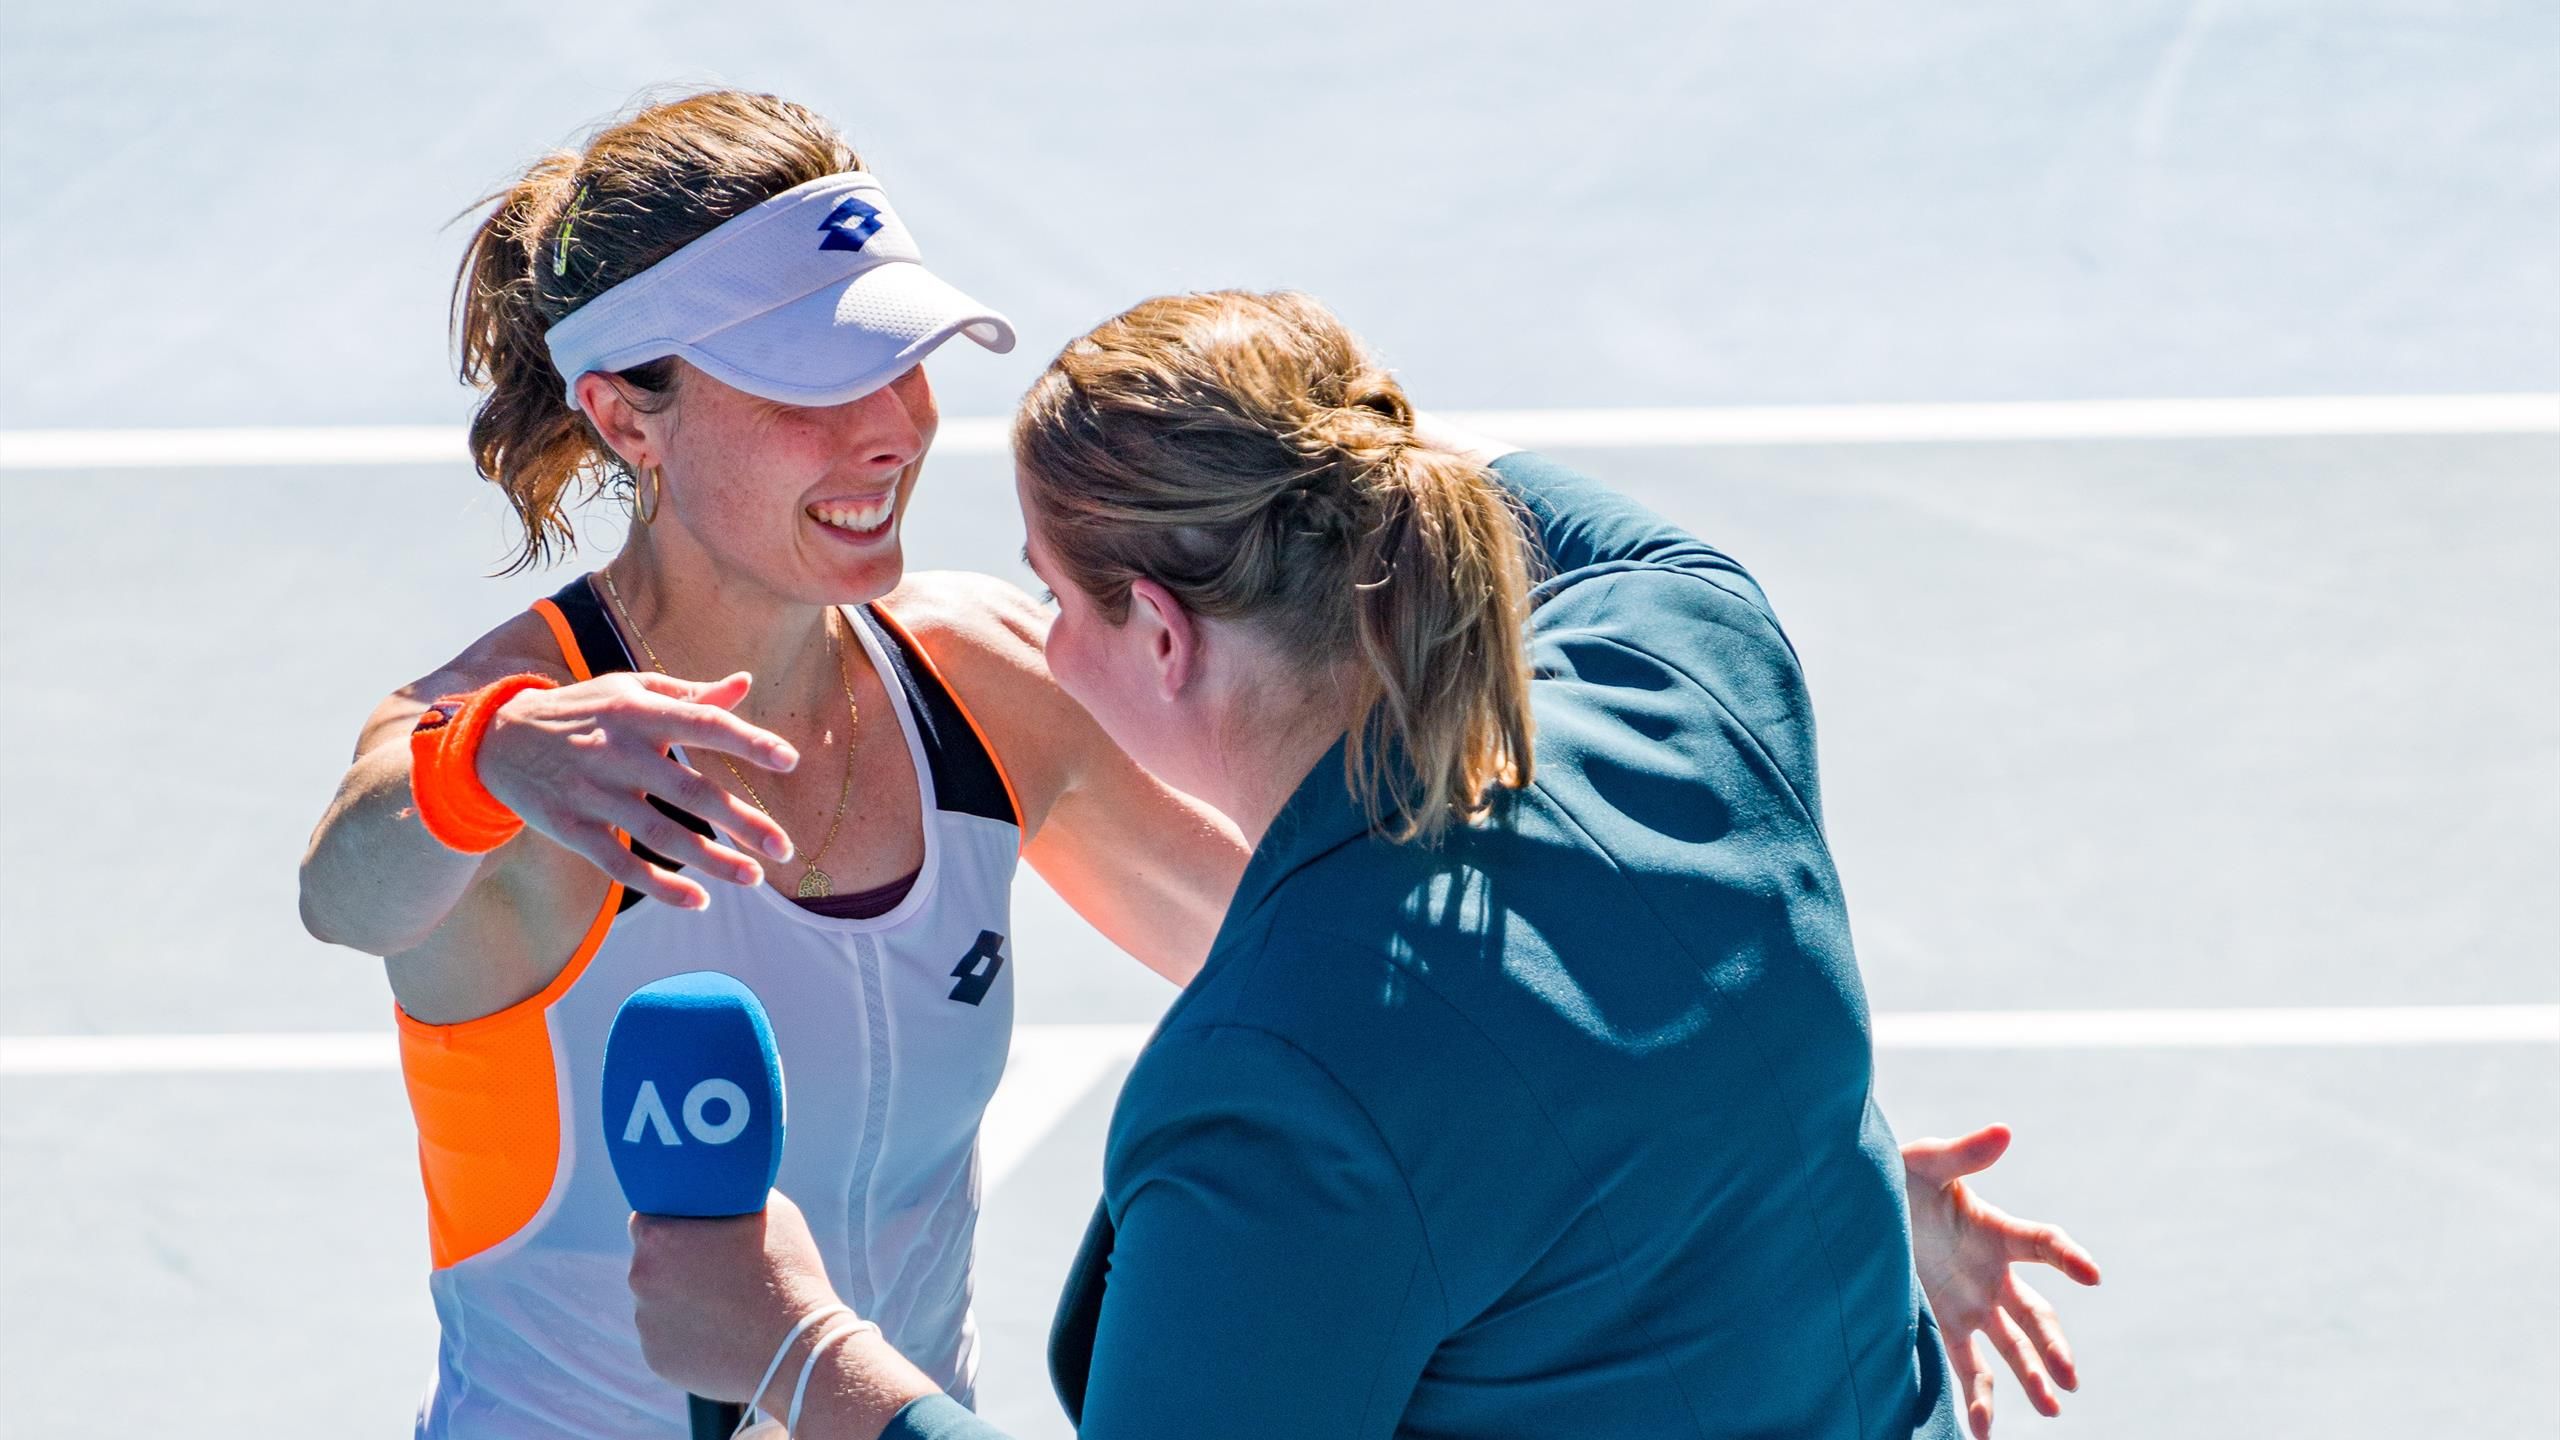 Australian Open 2022 Jelena Dokic nach Lob von Alizé Cornet zu Tränen gerührt - Australierin erhielt Hasskommentare